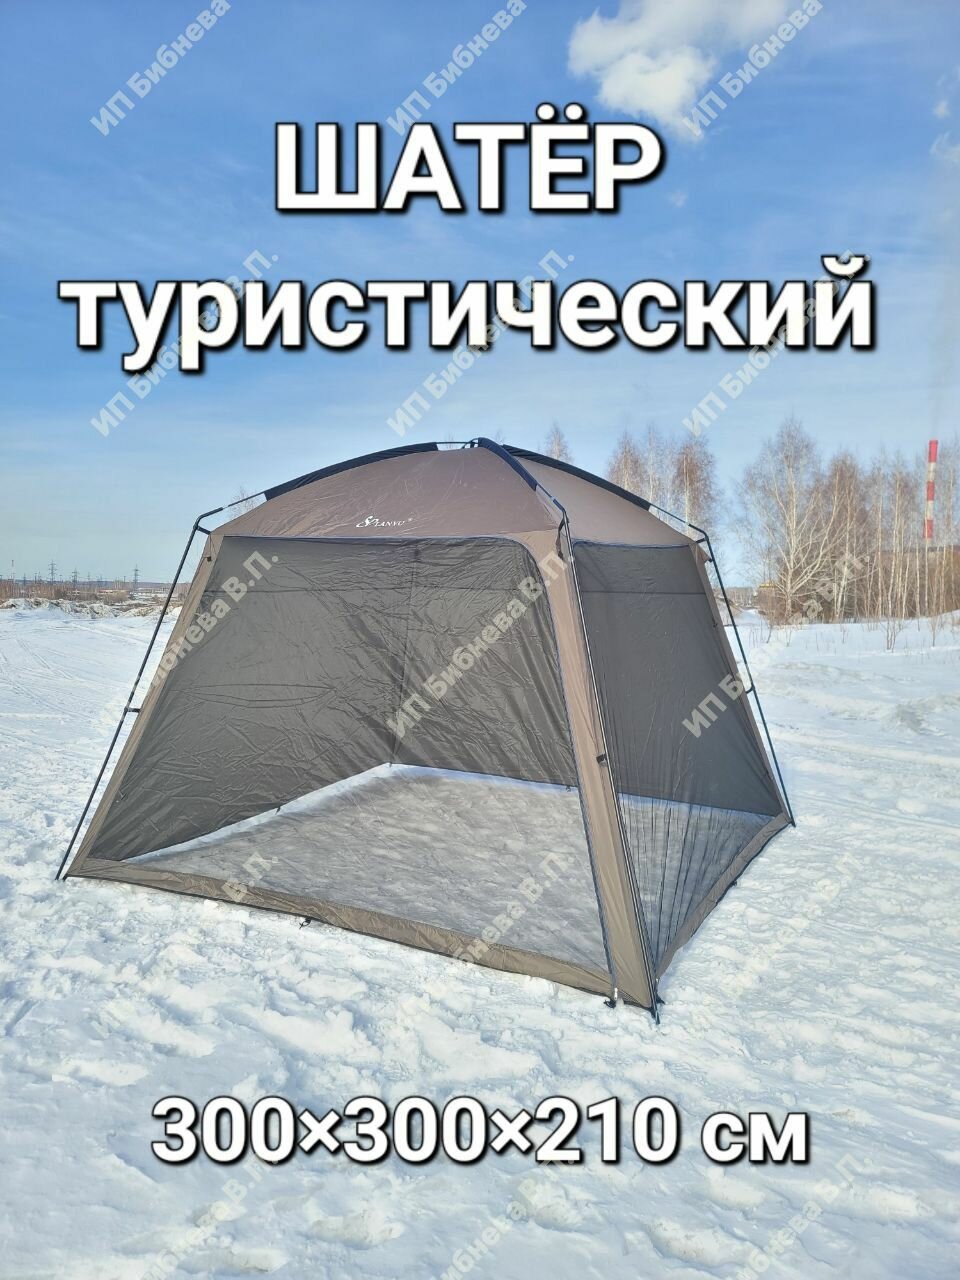 Беседка шатер туристический